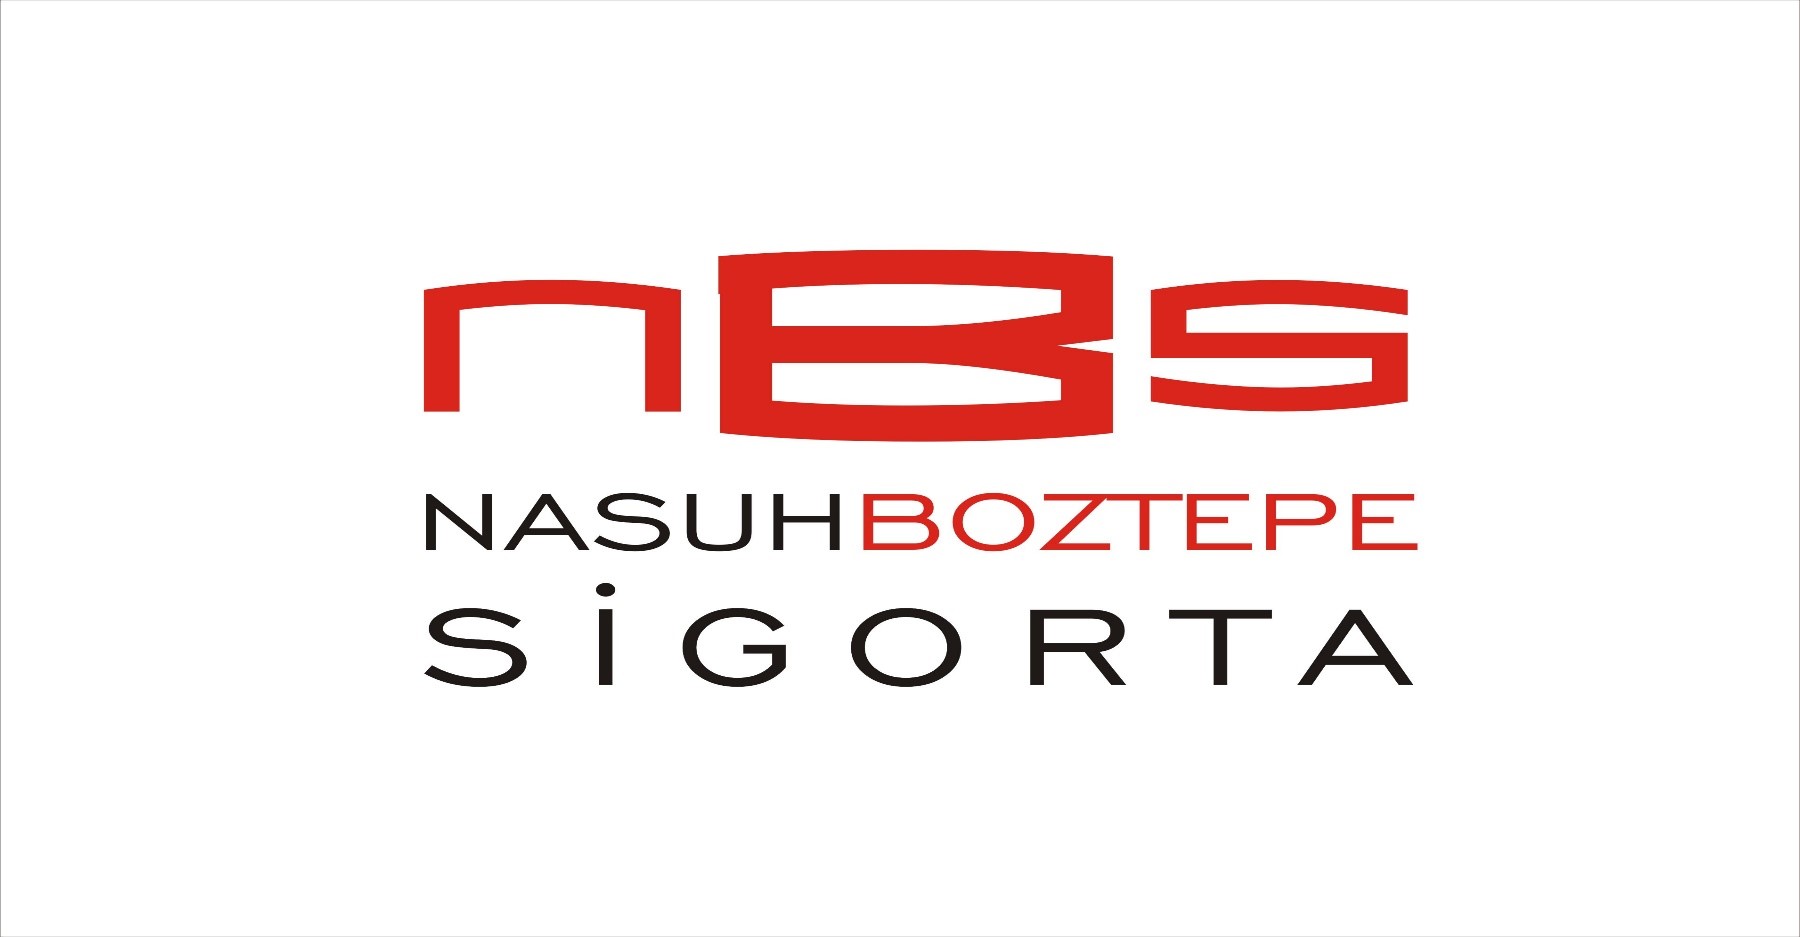 Nasuh Boztepe Sigorta Aracalık Hizmetleri Limited Şirtketi